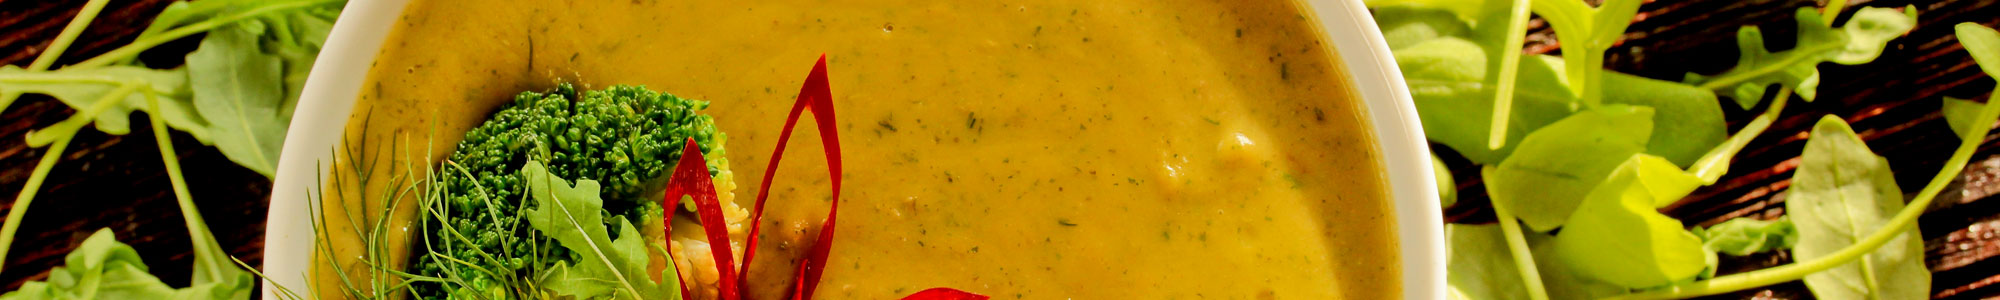 Suppe mit Brokkoli, Paprika und frischen Kräutern